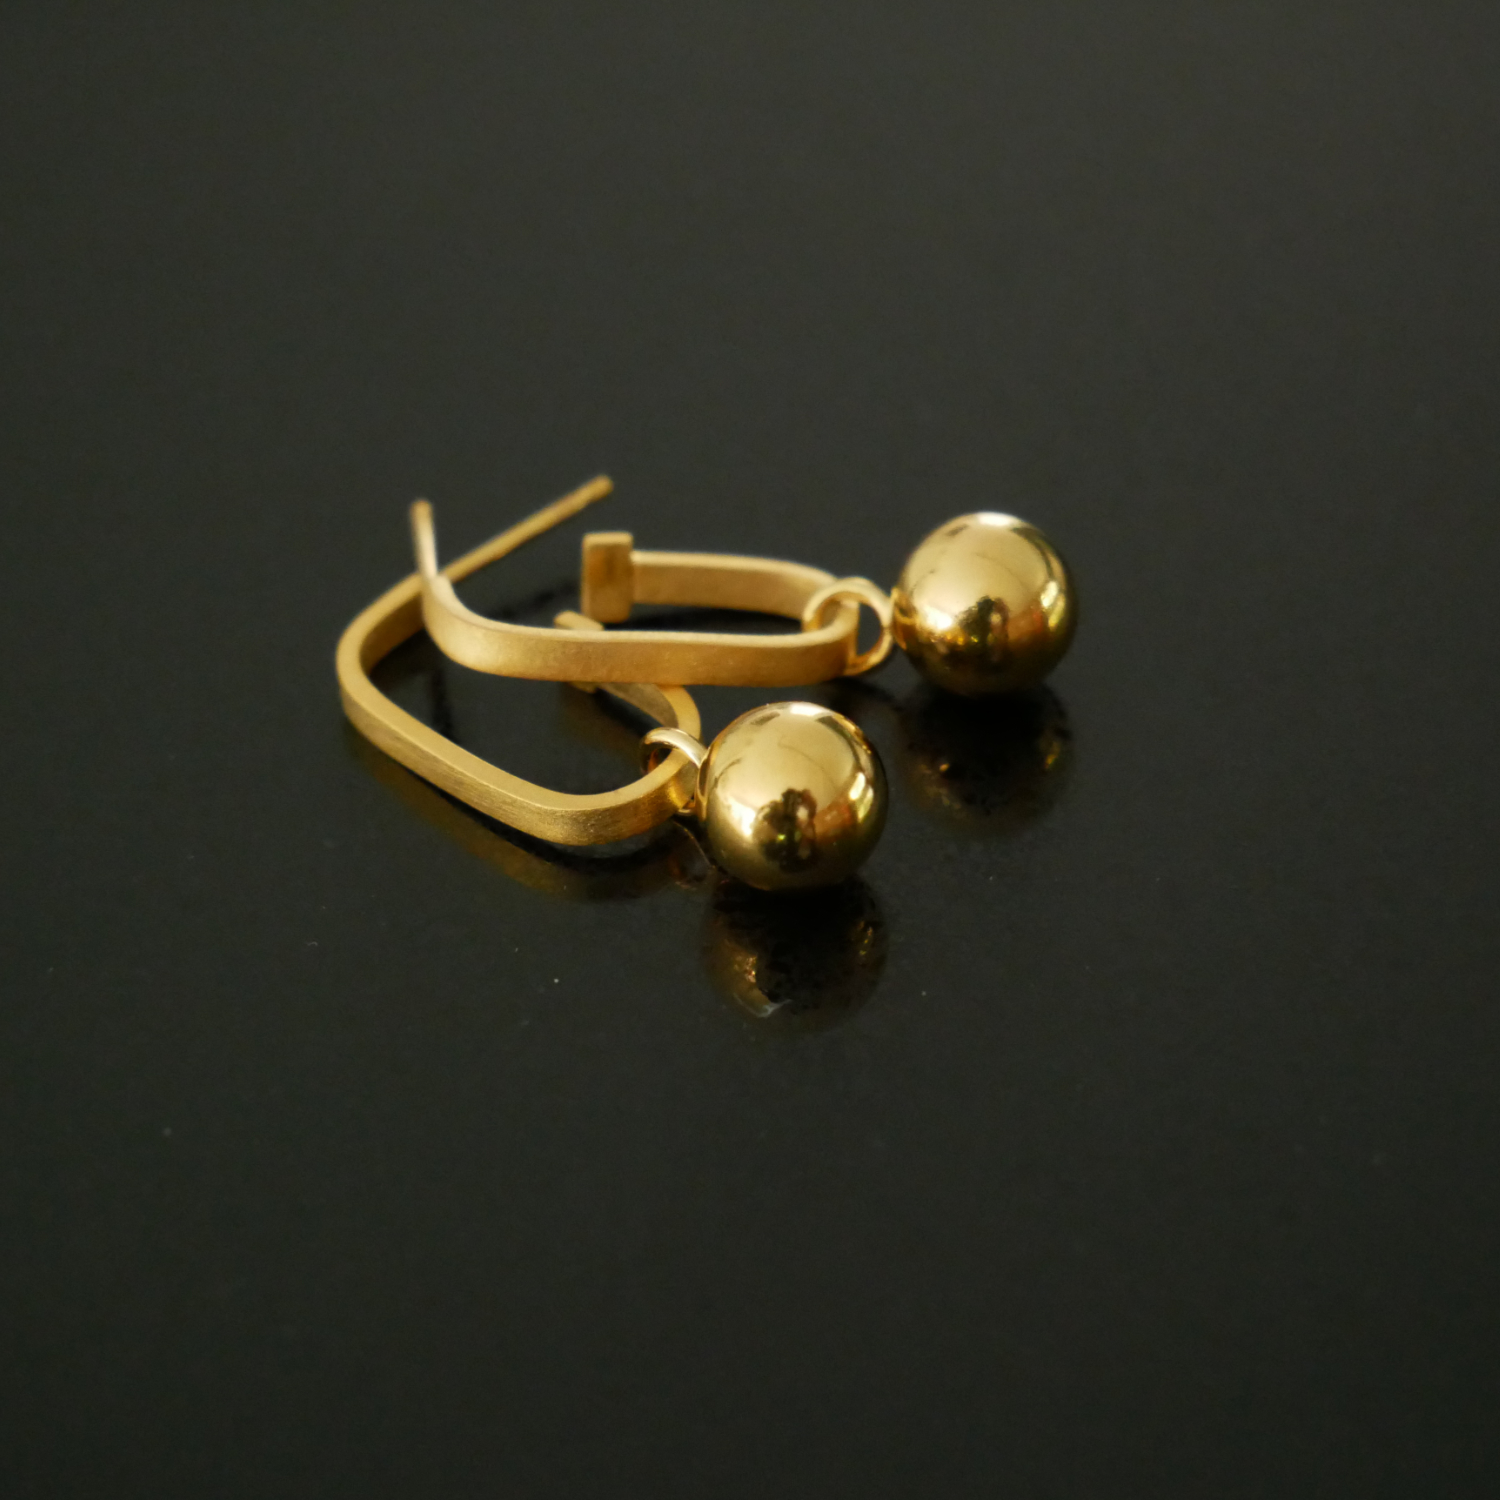 Gold vermeil hoop earrings with spheres